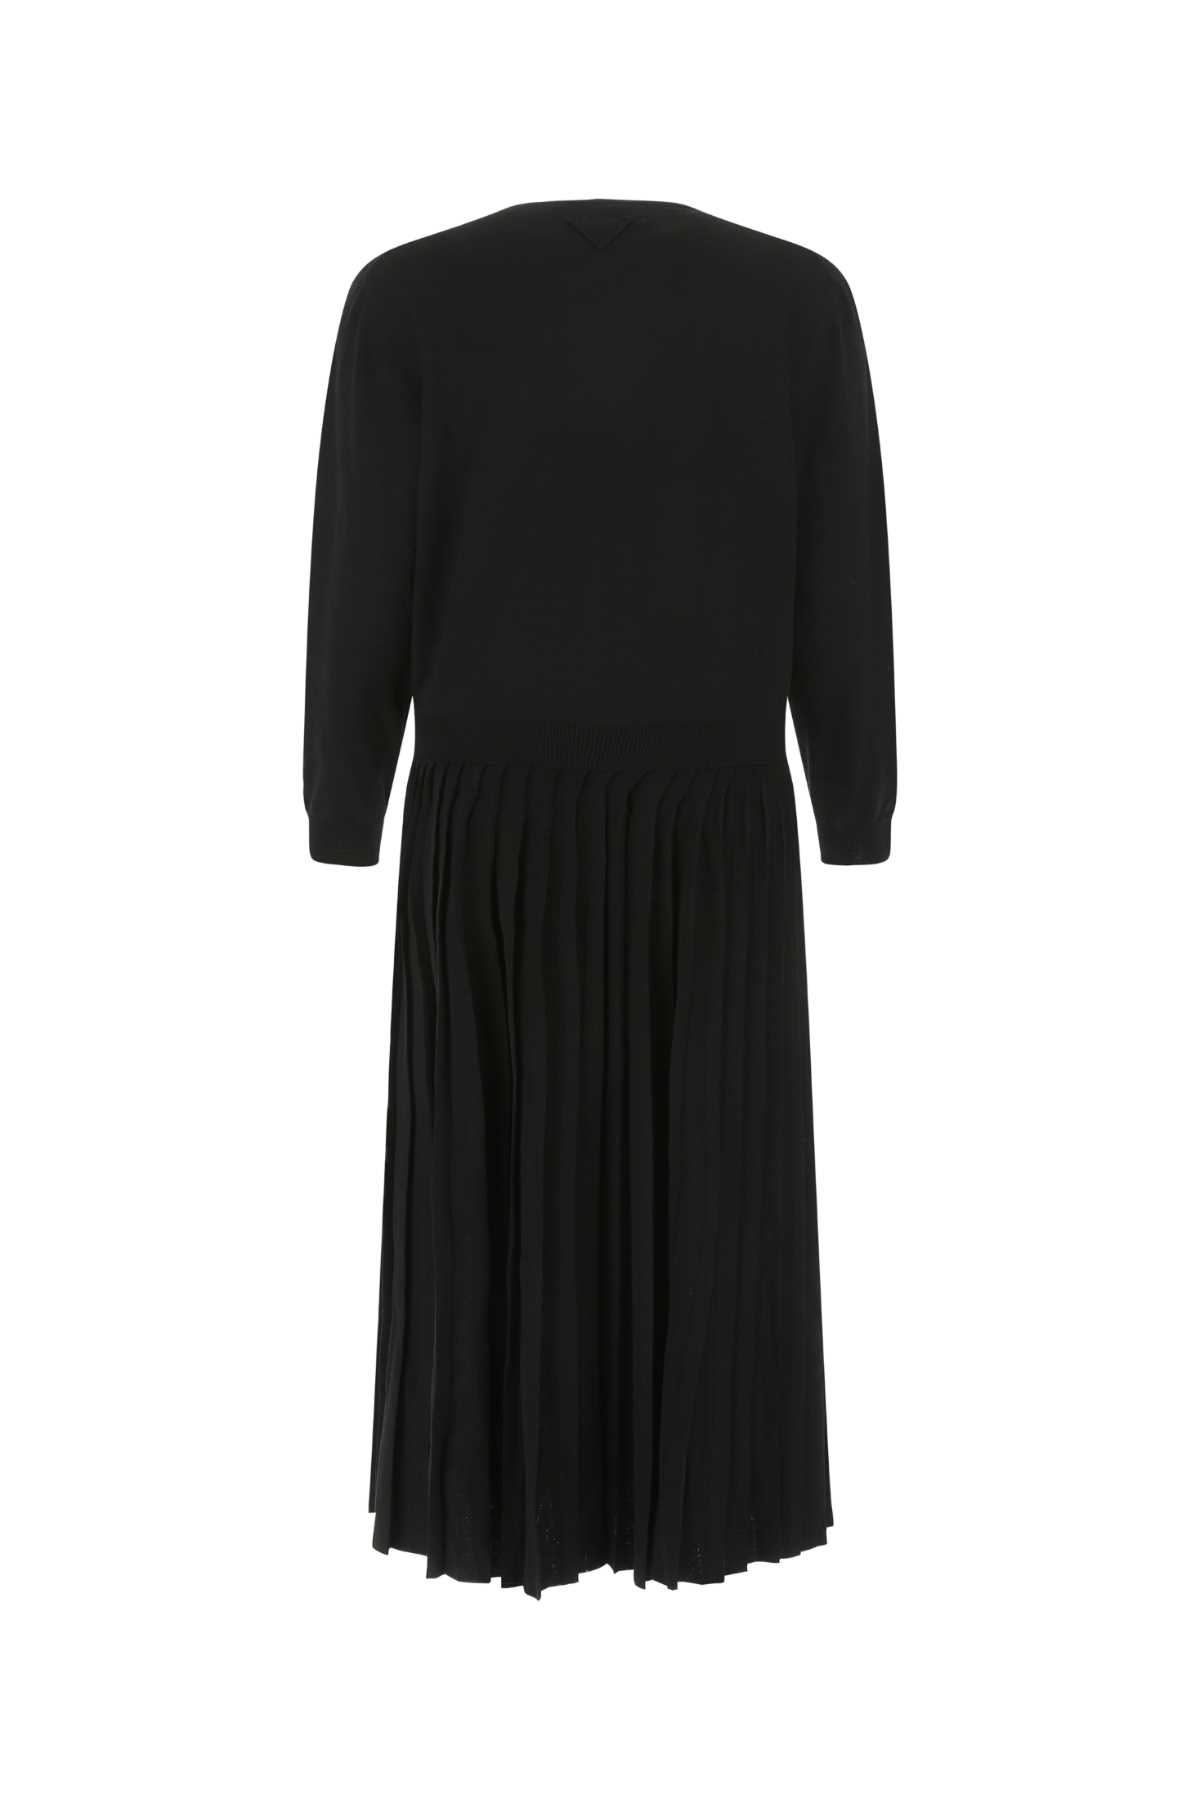 Shop Prada Black Stretch Wool Blend Dress In F0002